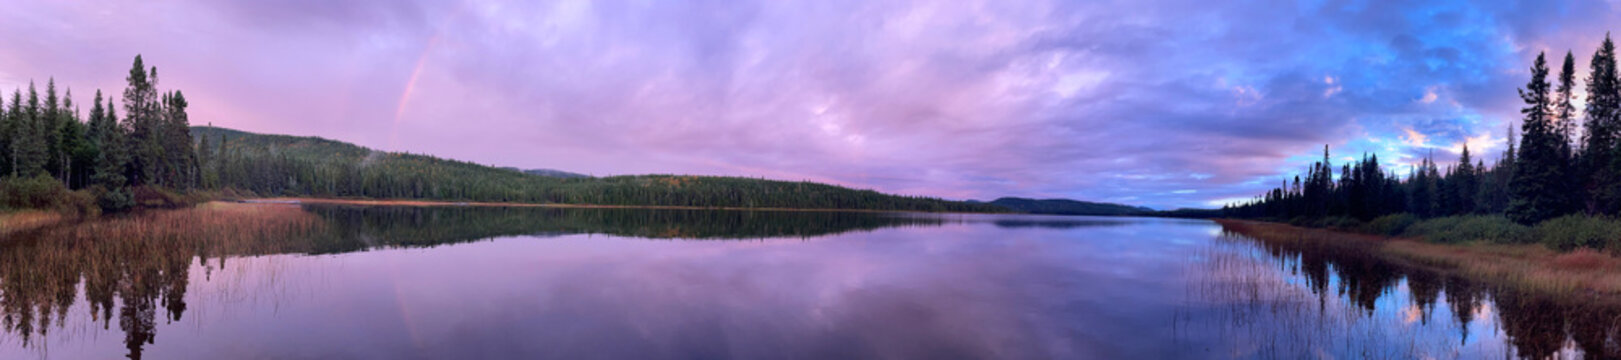 coucher de soleil sur le lac dans la forêt